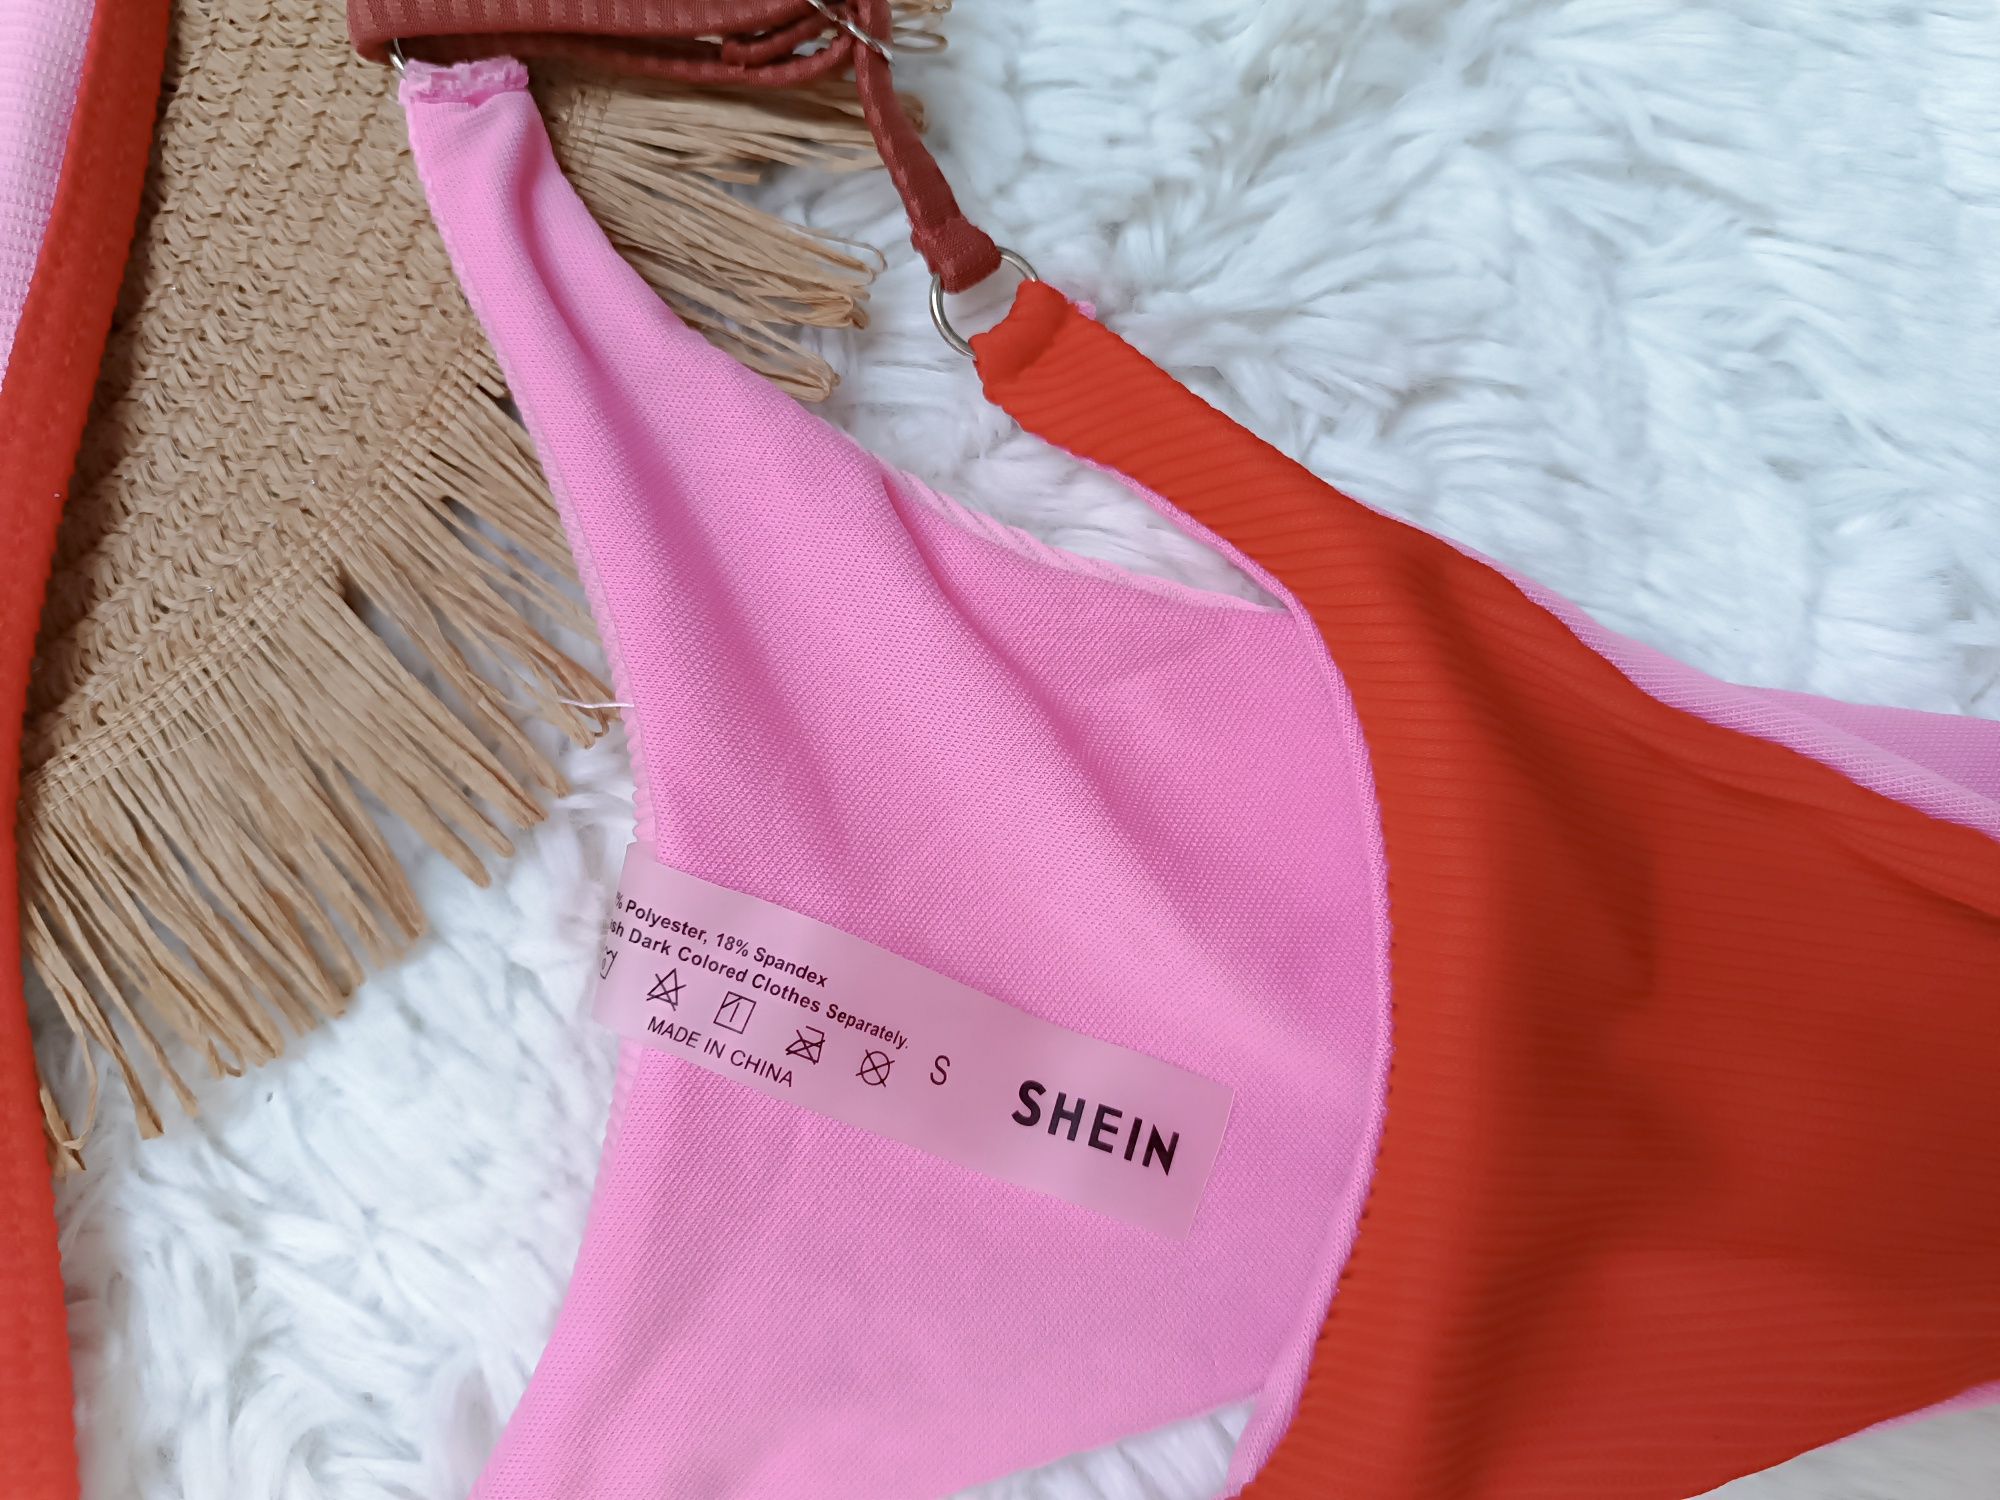 S Shein strój kąpielowy dwuczęściowy kostium plażowy prążki